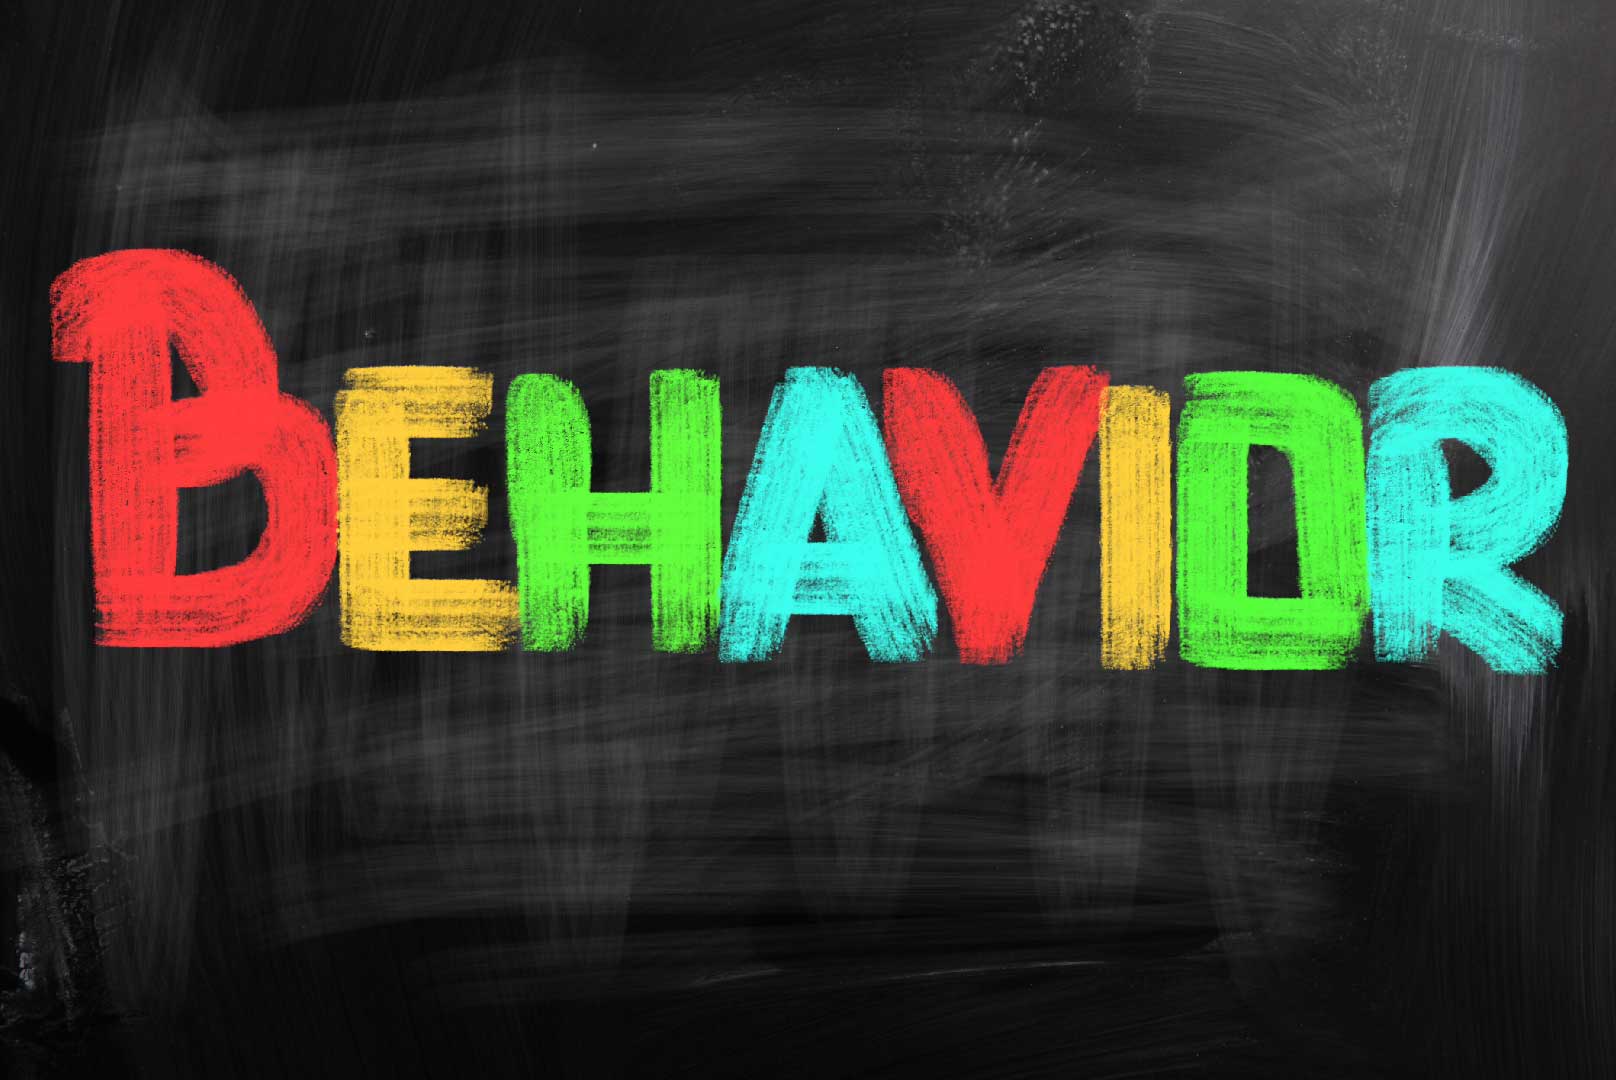 Behavior Concept - The words behavior on a chalkboard background